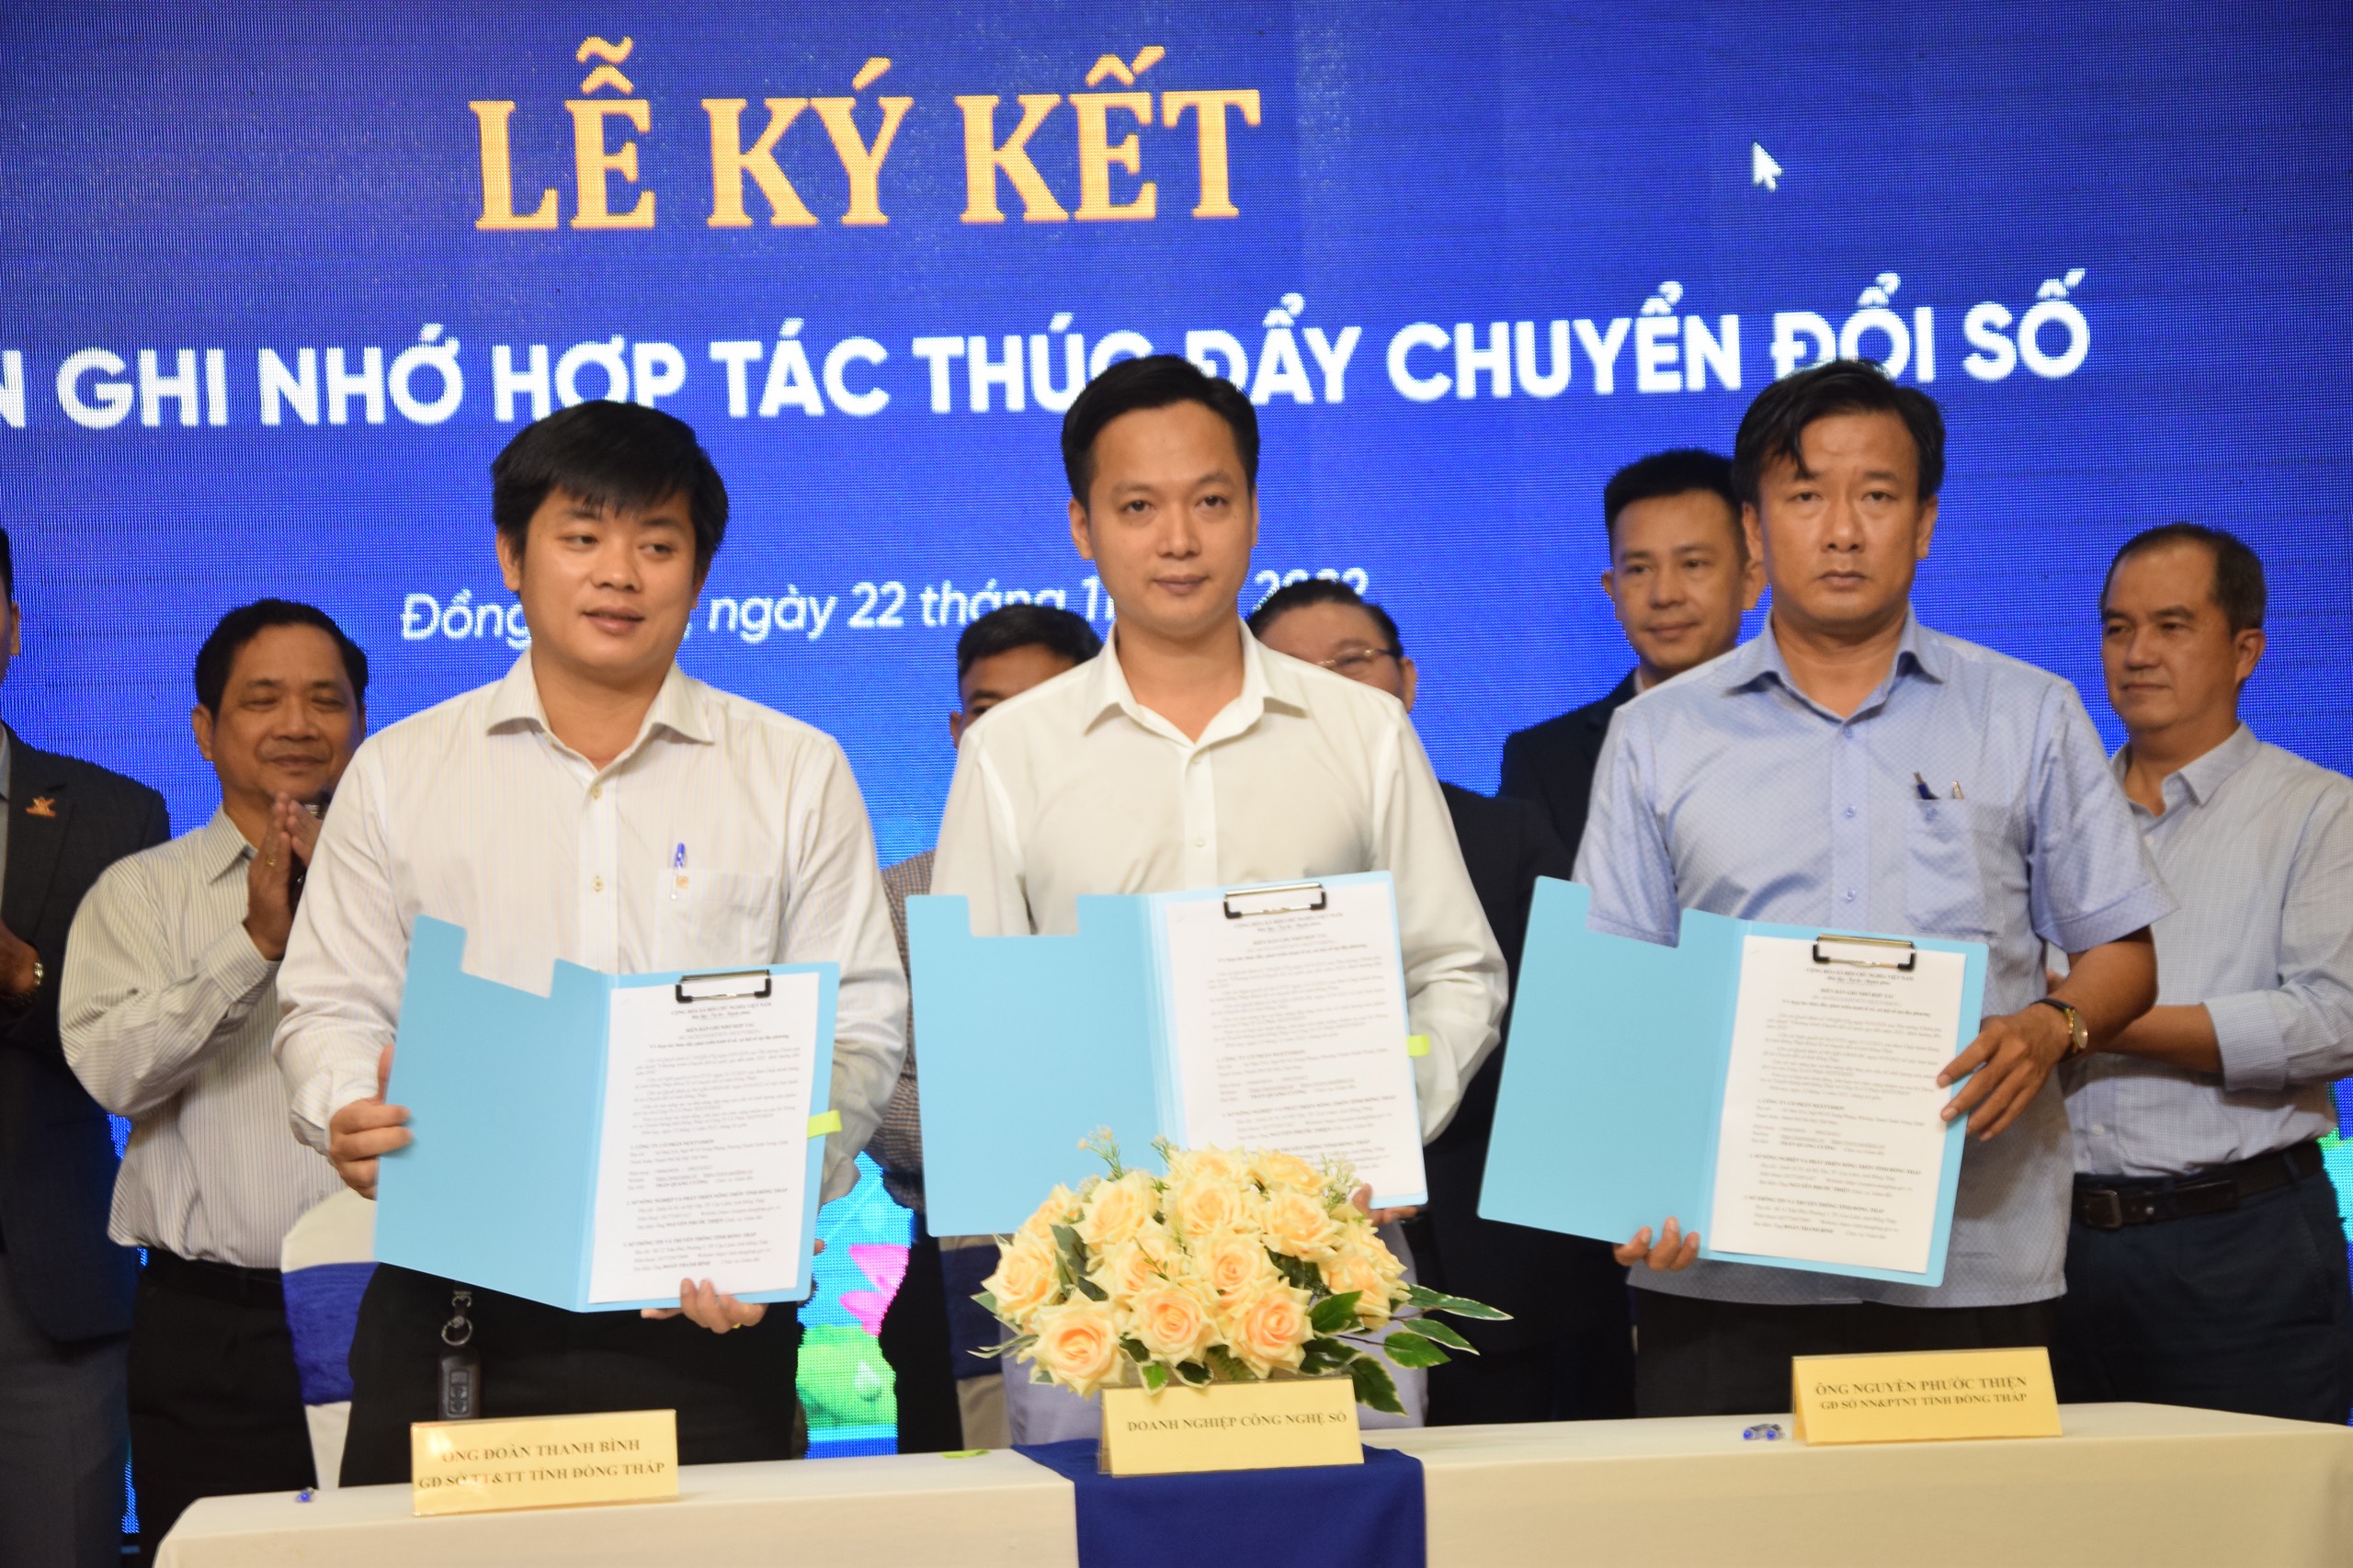 CEO NextX ký biên bản ghi nhớ hợp tác thúc đẩy chuyển đổi số TT&TT và NN&PTNT tỉnh Đồng Tháp